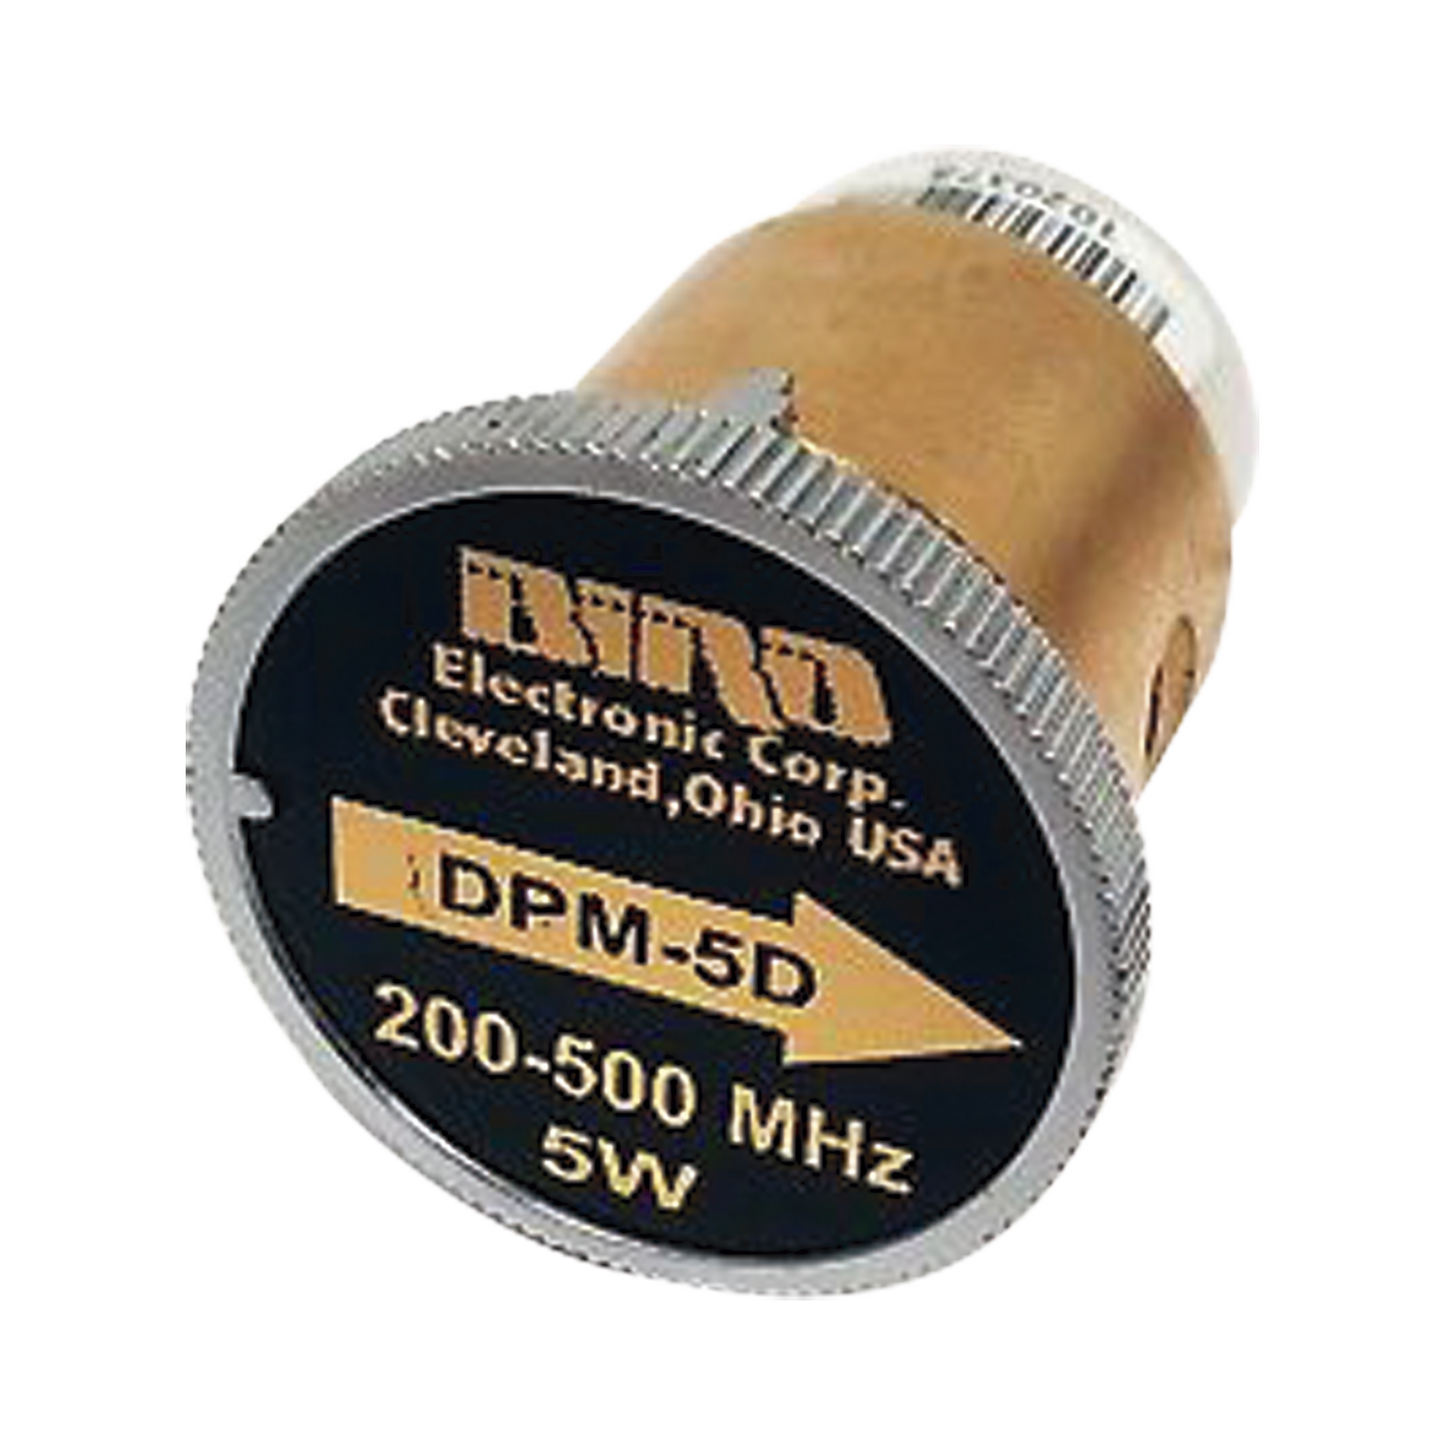 Elemento DPM de 200-500 MHz en Sensor 5010 / 5014, con potencia de Salida de 125 mW-5 W.